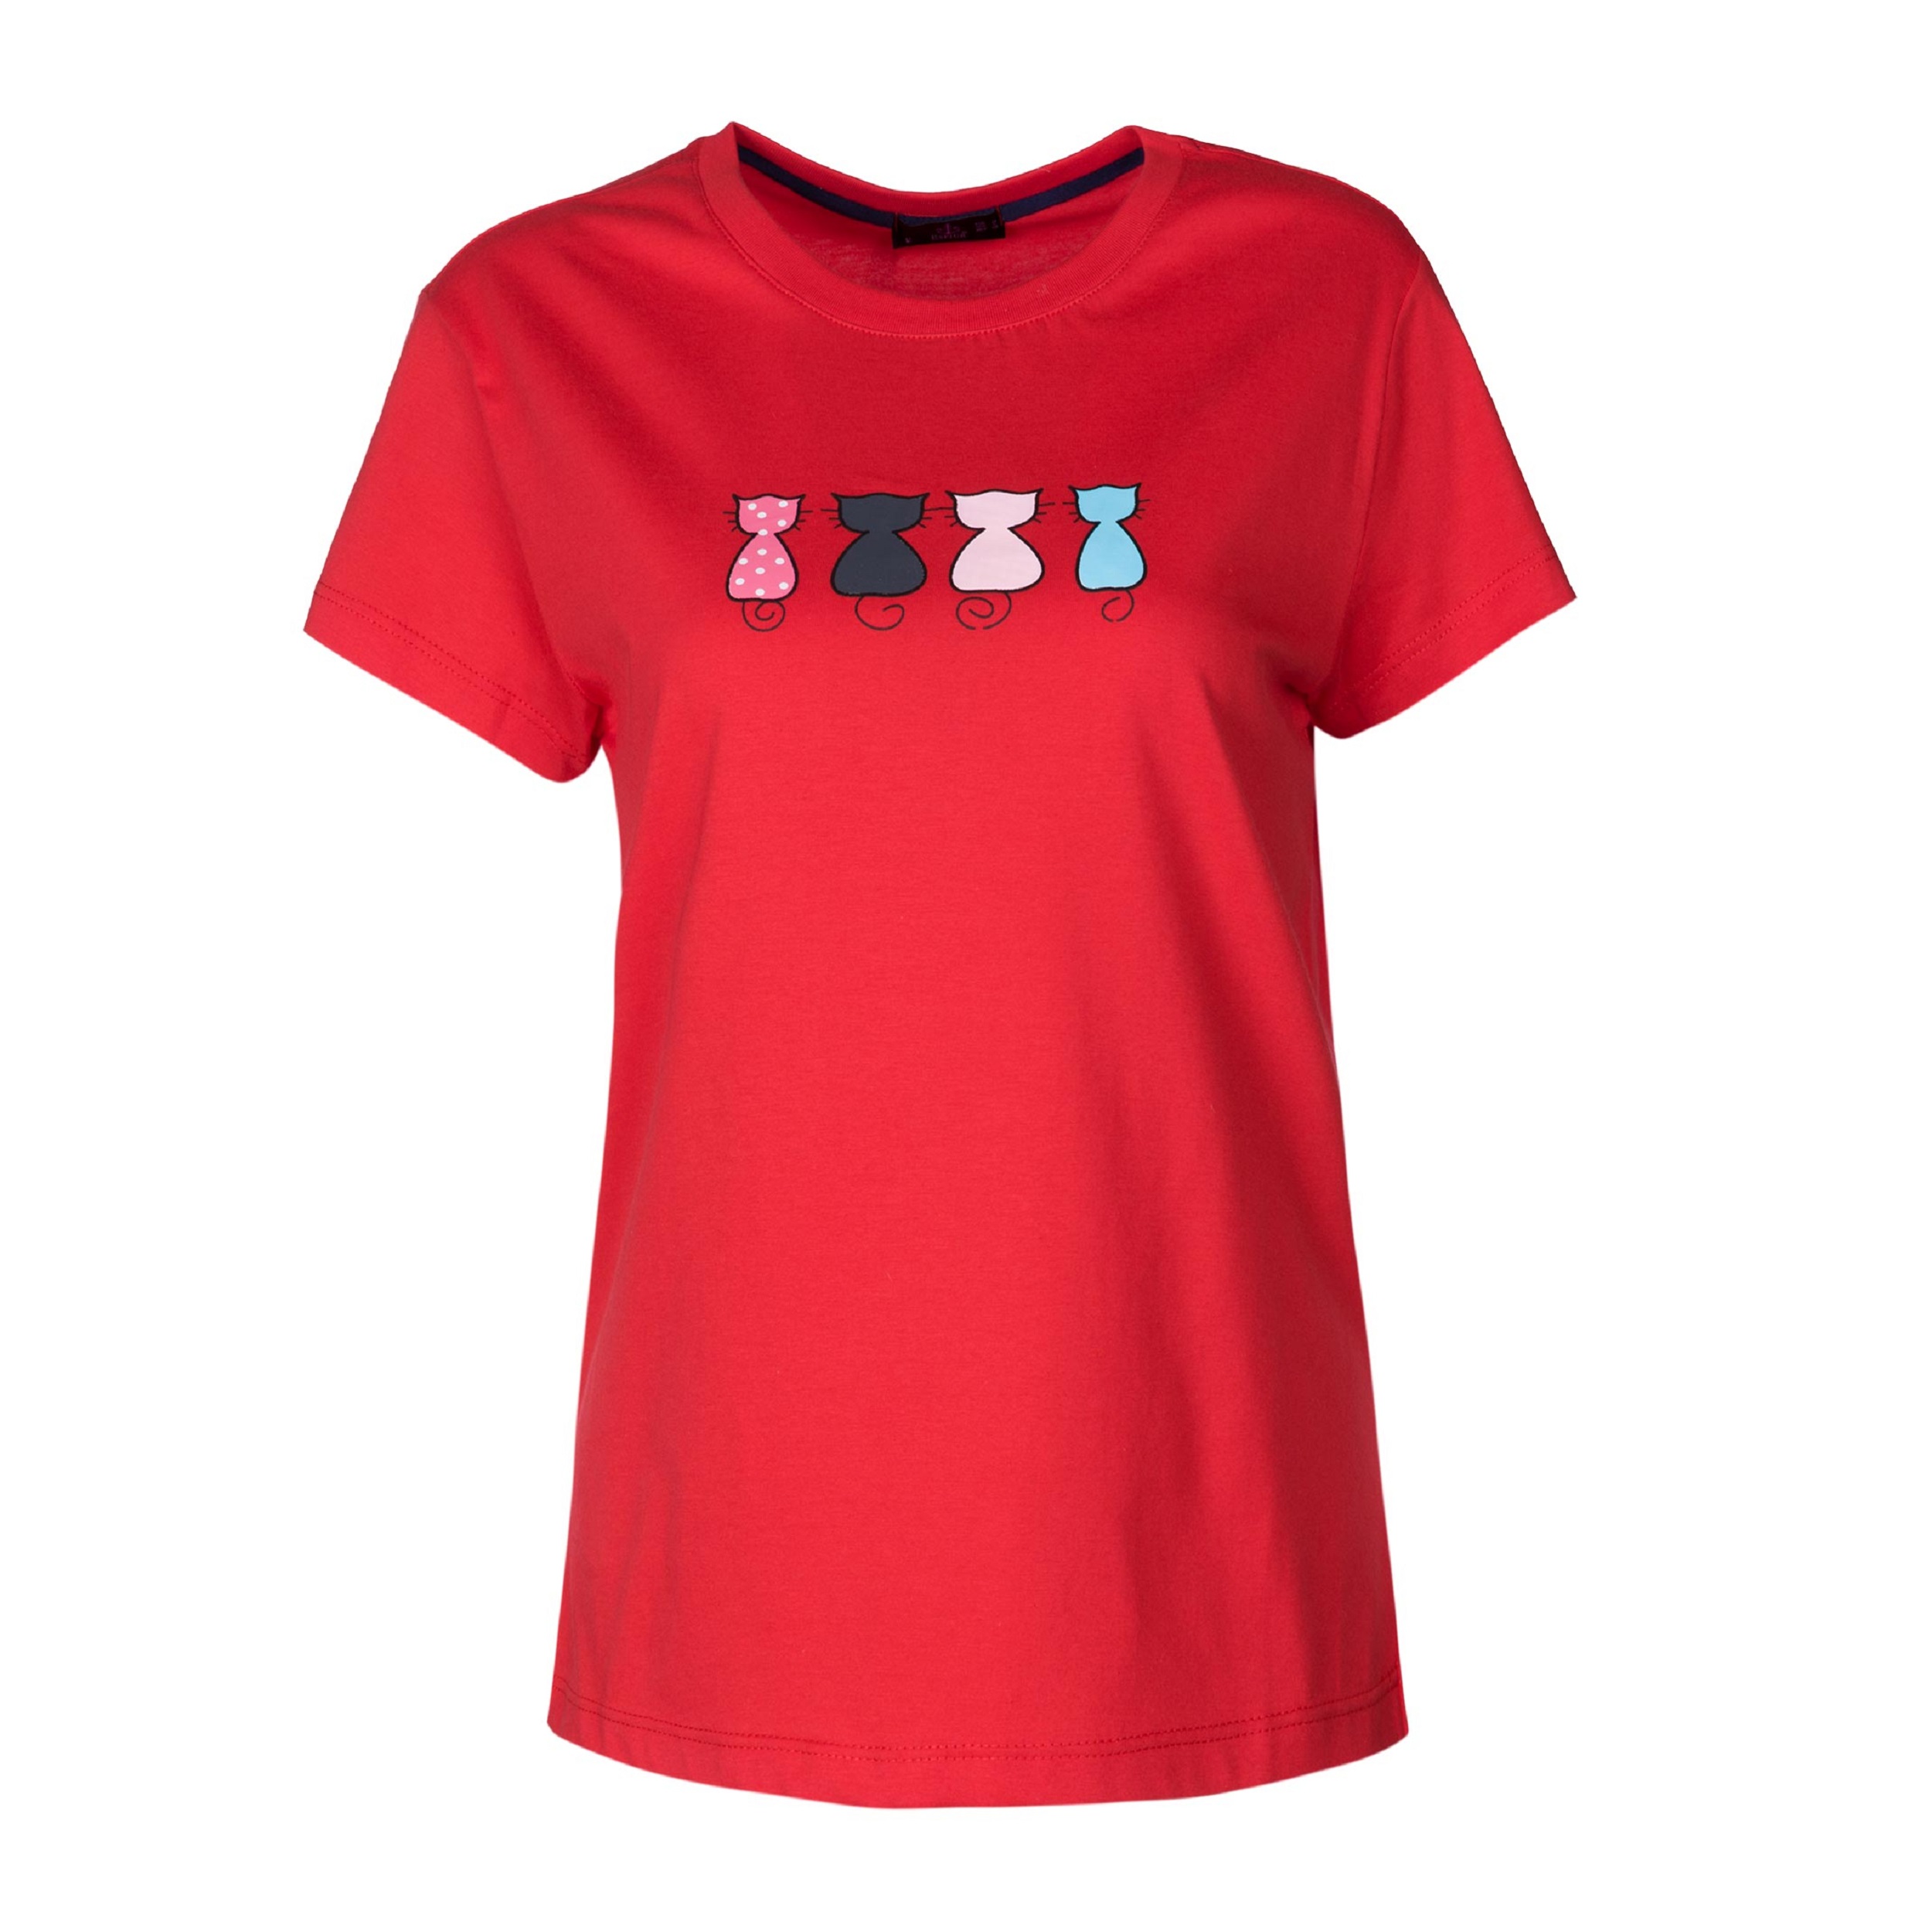 تی شرت آستین کوتاه زنانه اسپیور مدل یقه گرد کد 155134 رنگ قرمز